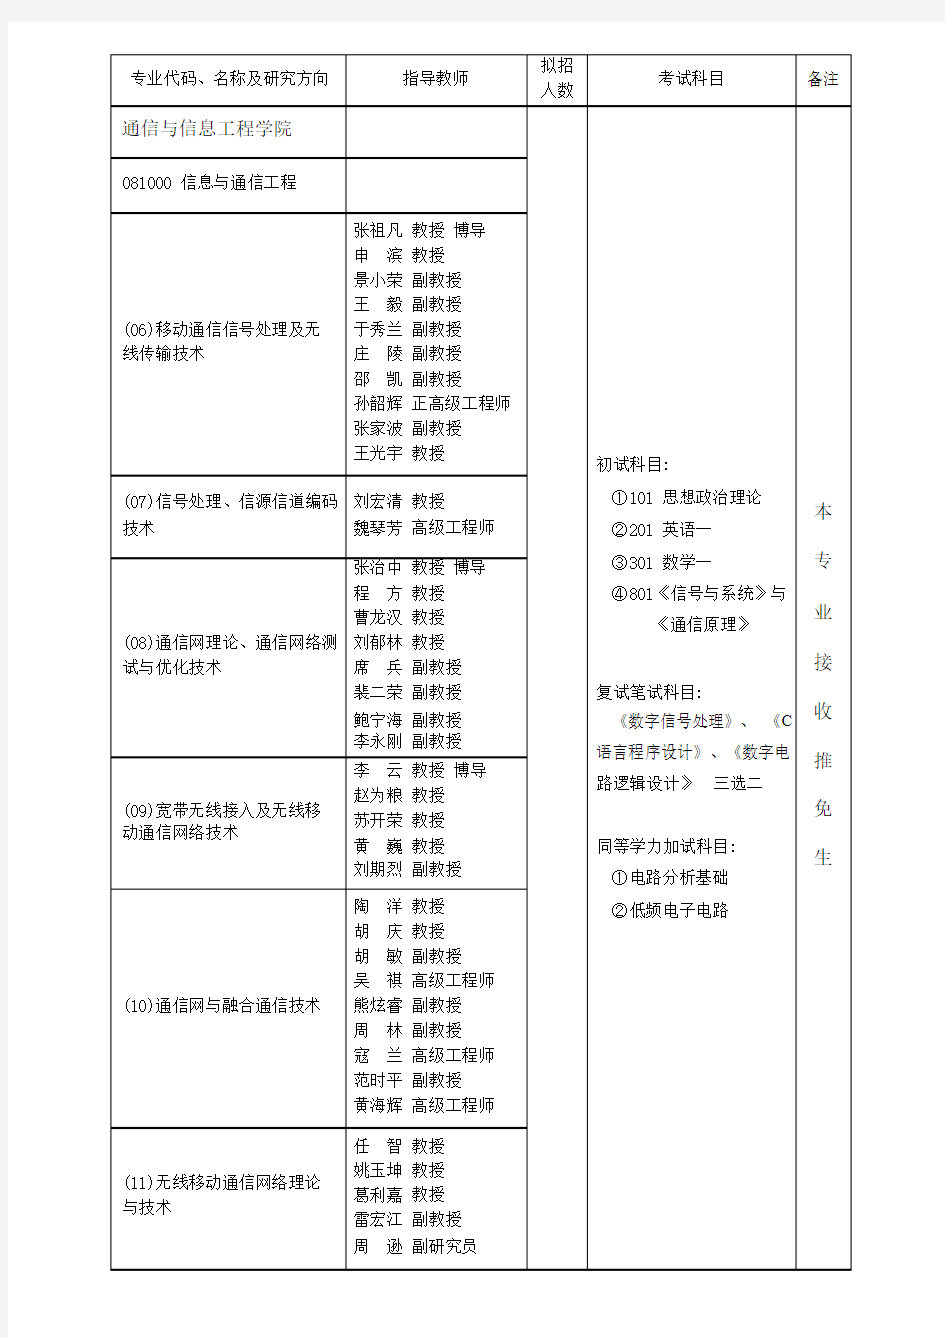 重庆邮电大学2016年硕士研究生报考指南(专业目录).pdf